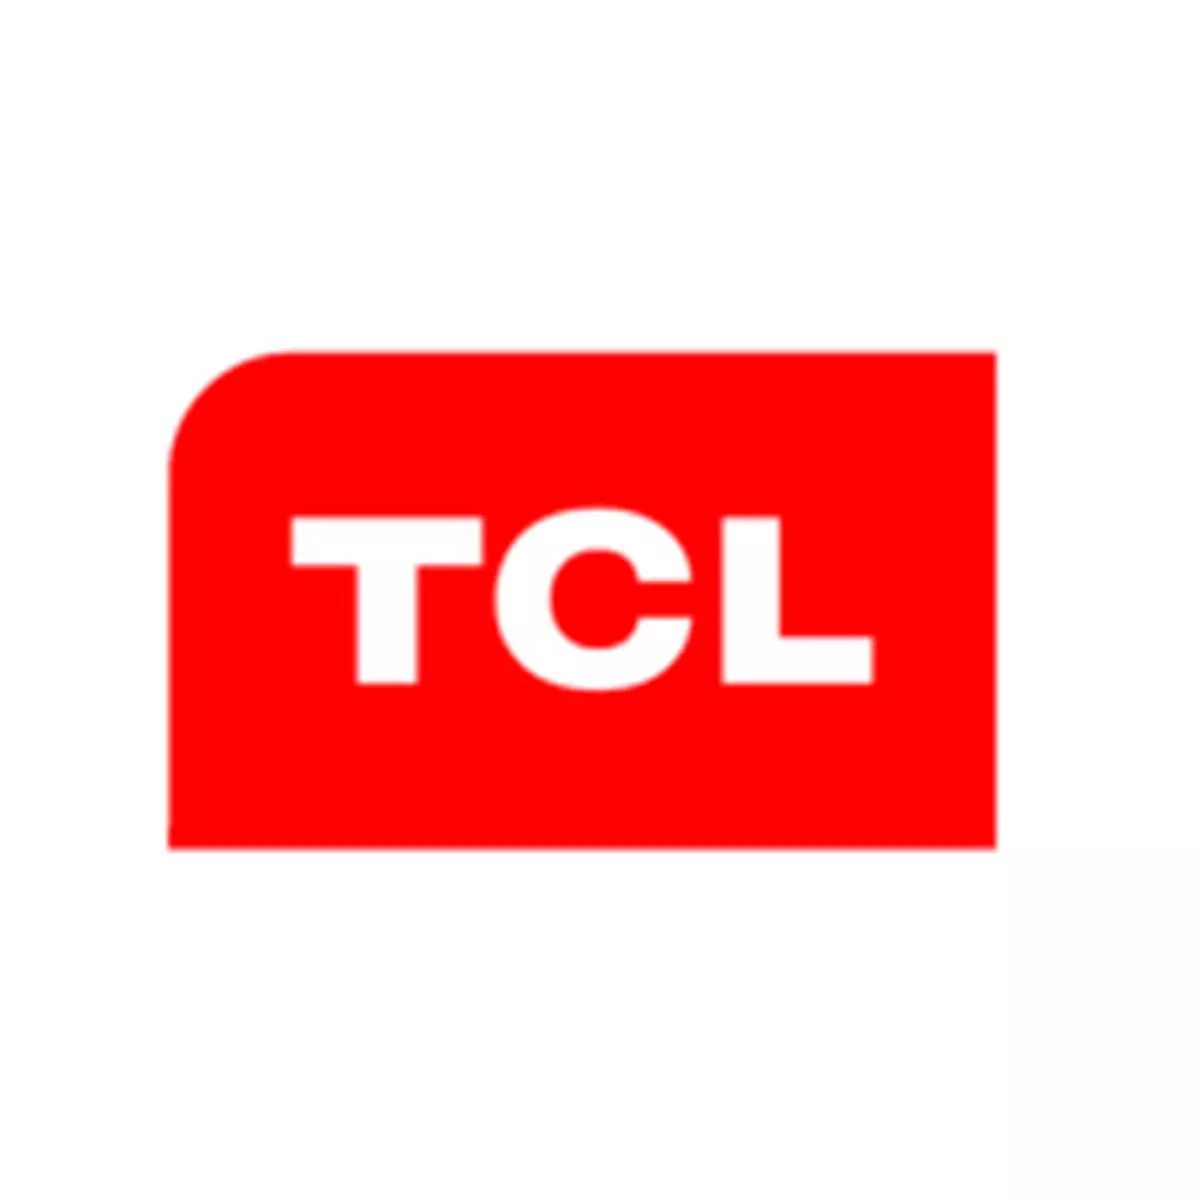 TCL電子行業領先地位